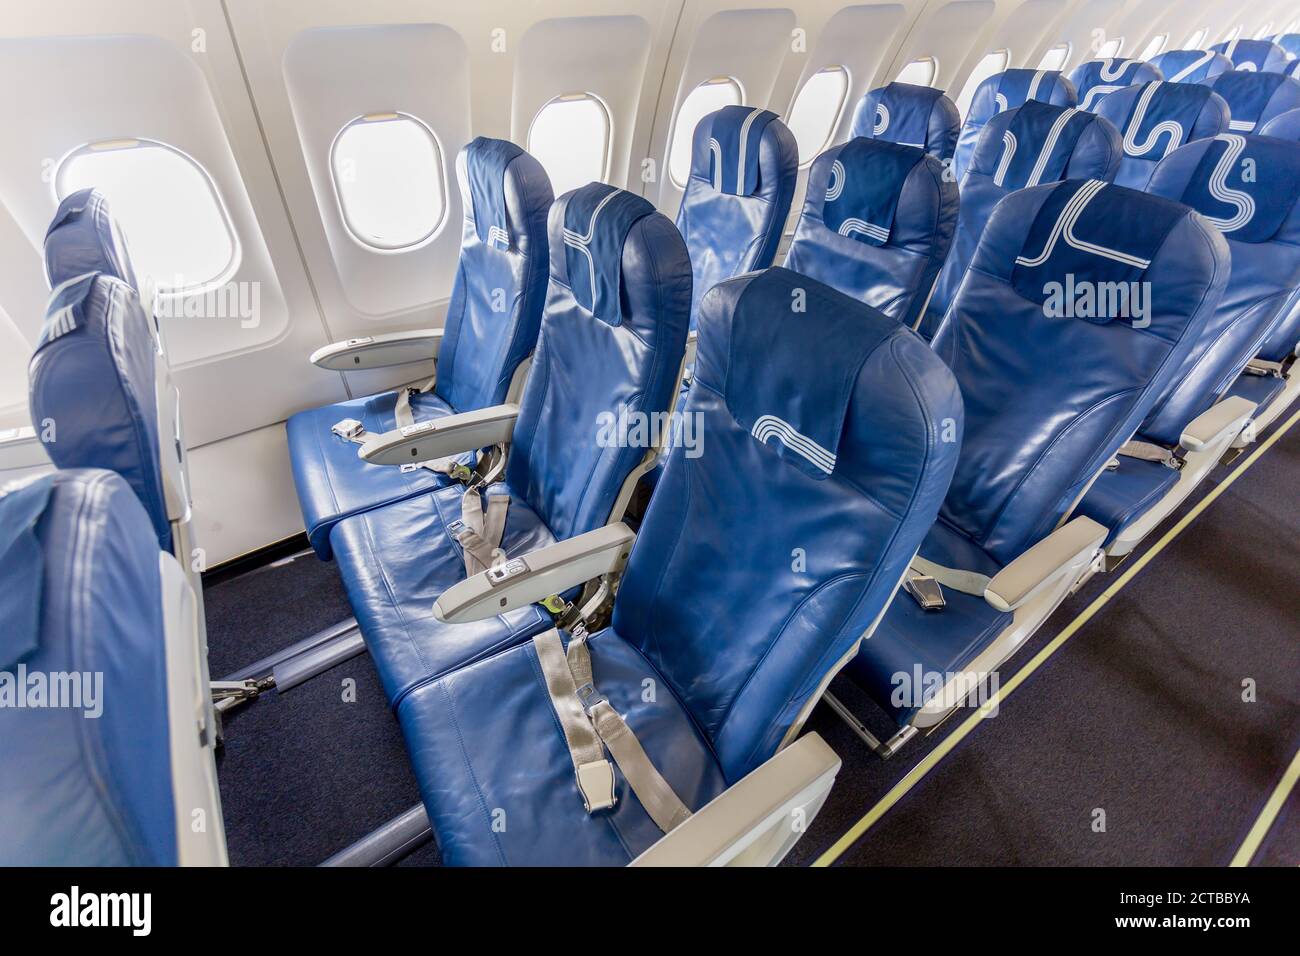 Airbus a319 seats immagini e fotografie stock ad alta risoluzione - Alamy